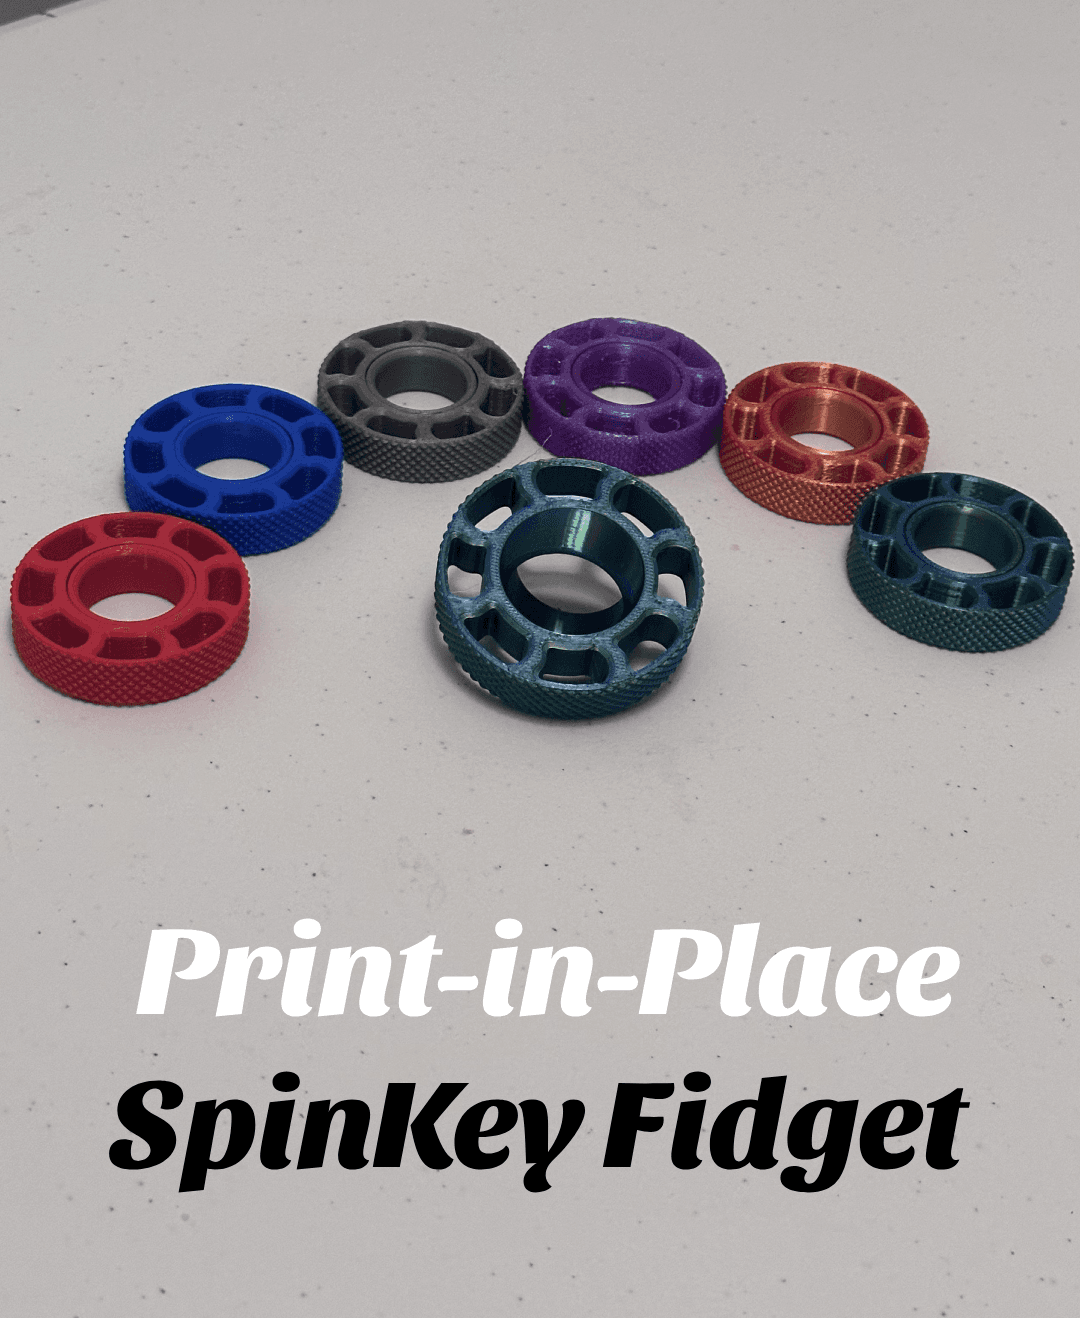 SpinKey Fidget  3d model